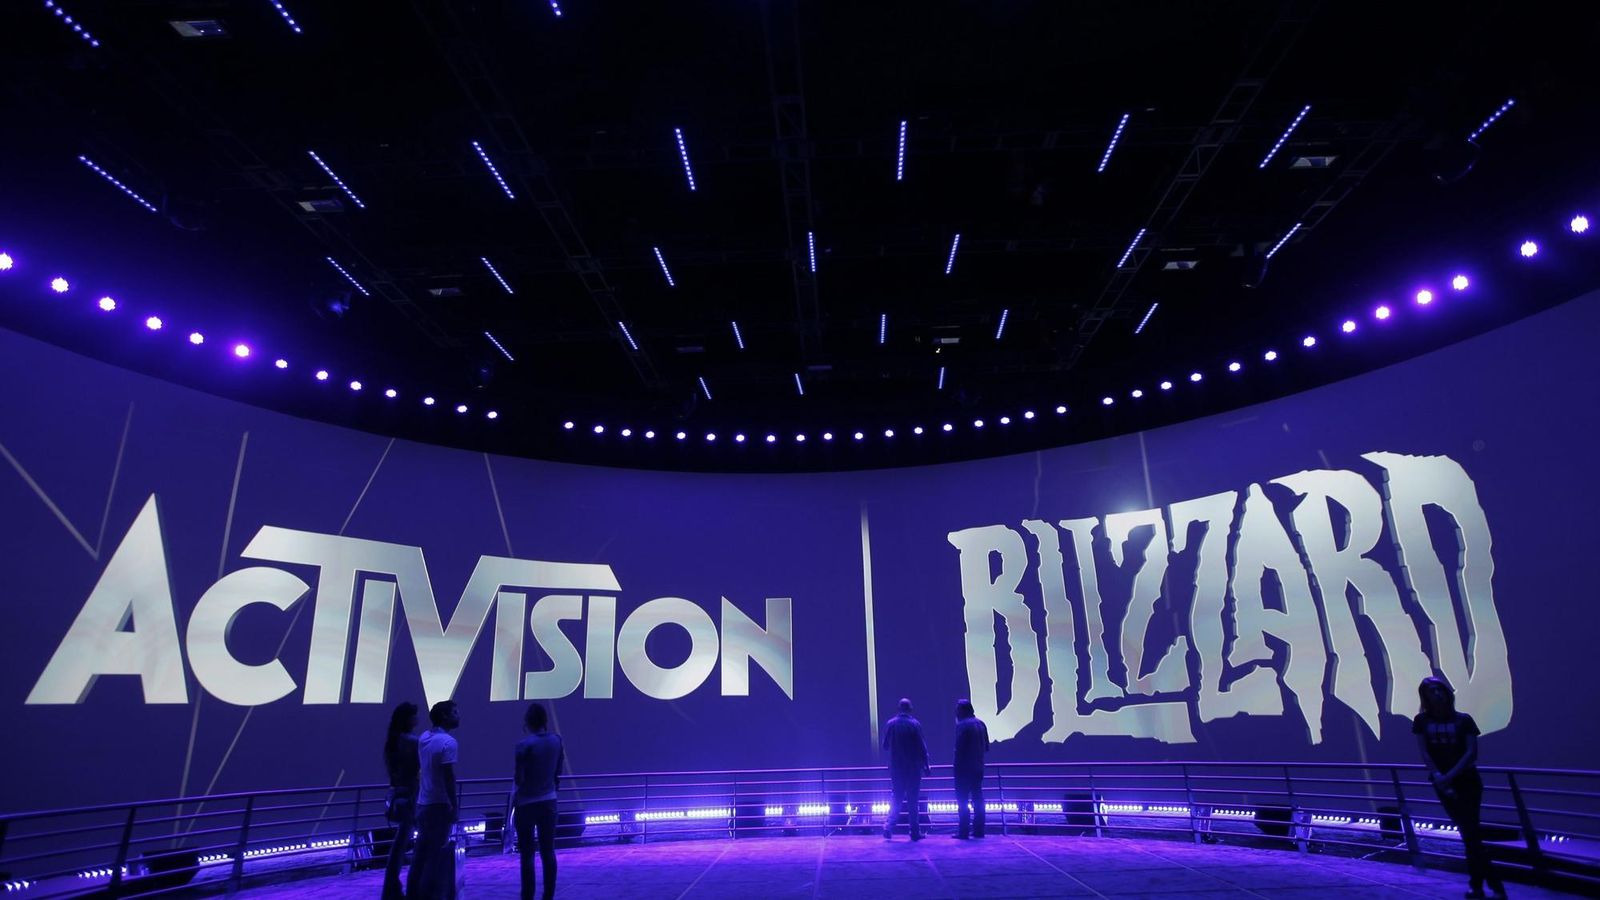 Brusel prešetruje plánovanú akvizíciu Activision Blizzard zo strany Microsoftu